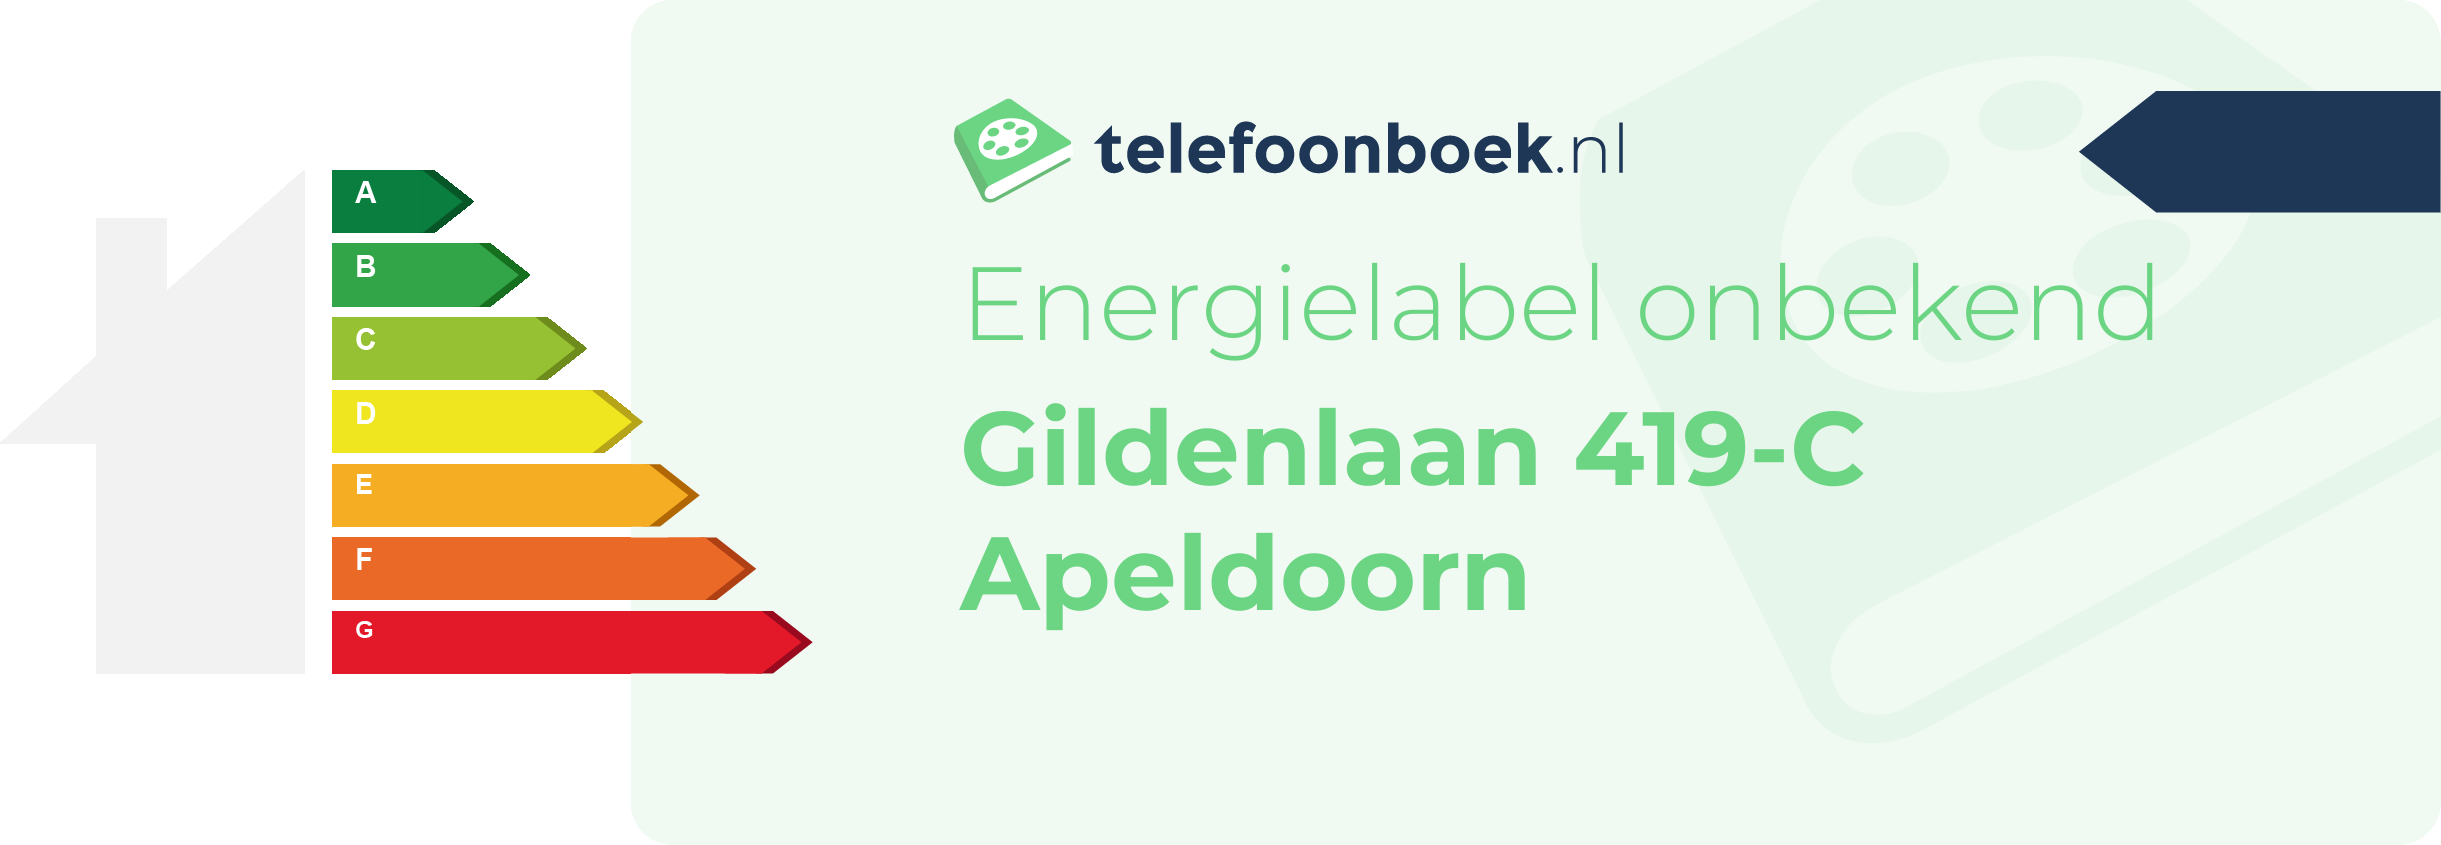 Energielabel Gildenlaan 419-C Apeldoorn